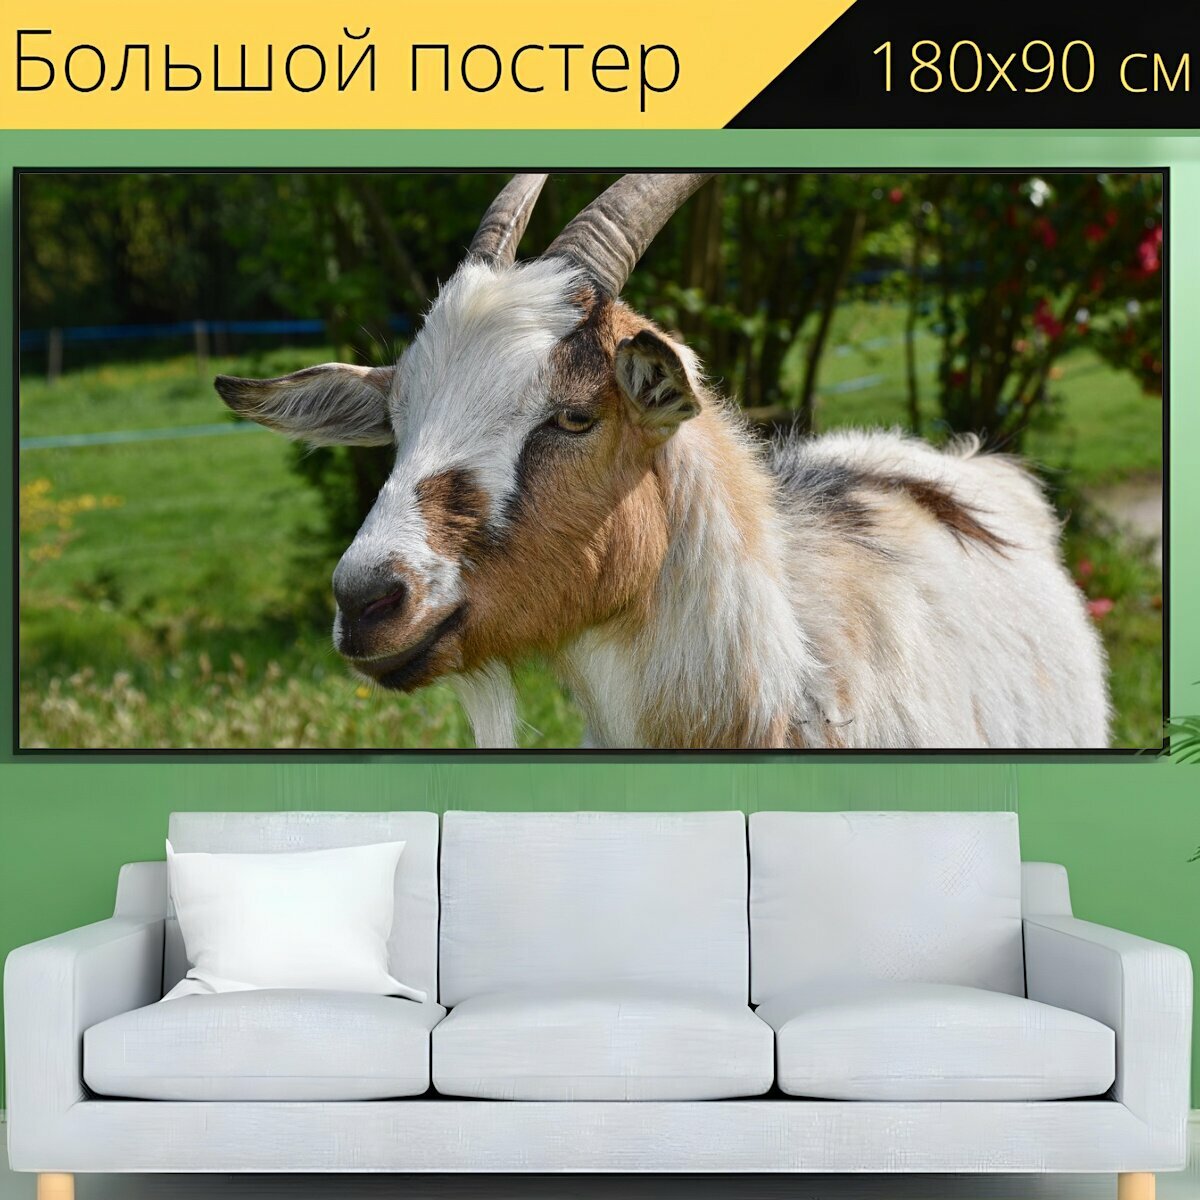 Большой постер "Коза, козел, козел имеет рога" 180 x 90 см. для интерьера